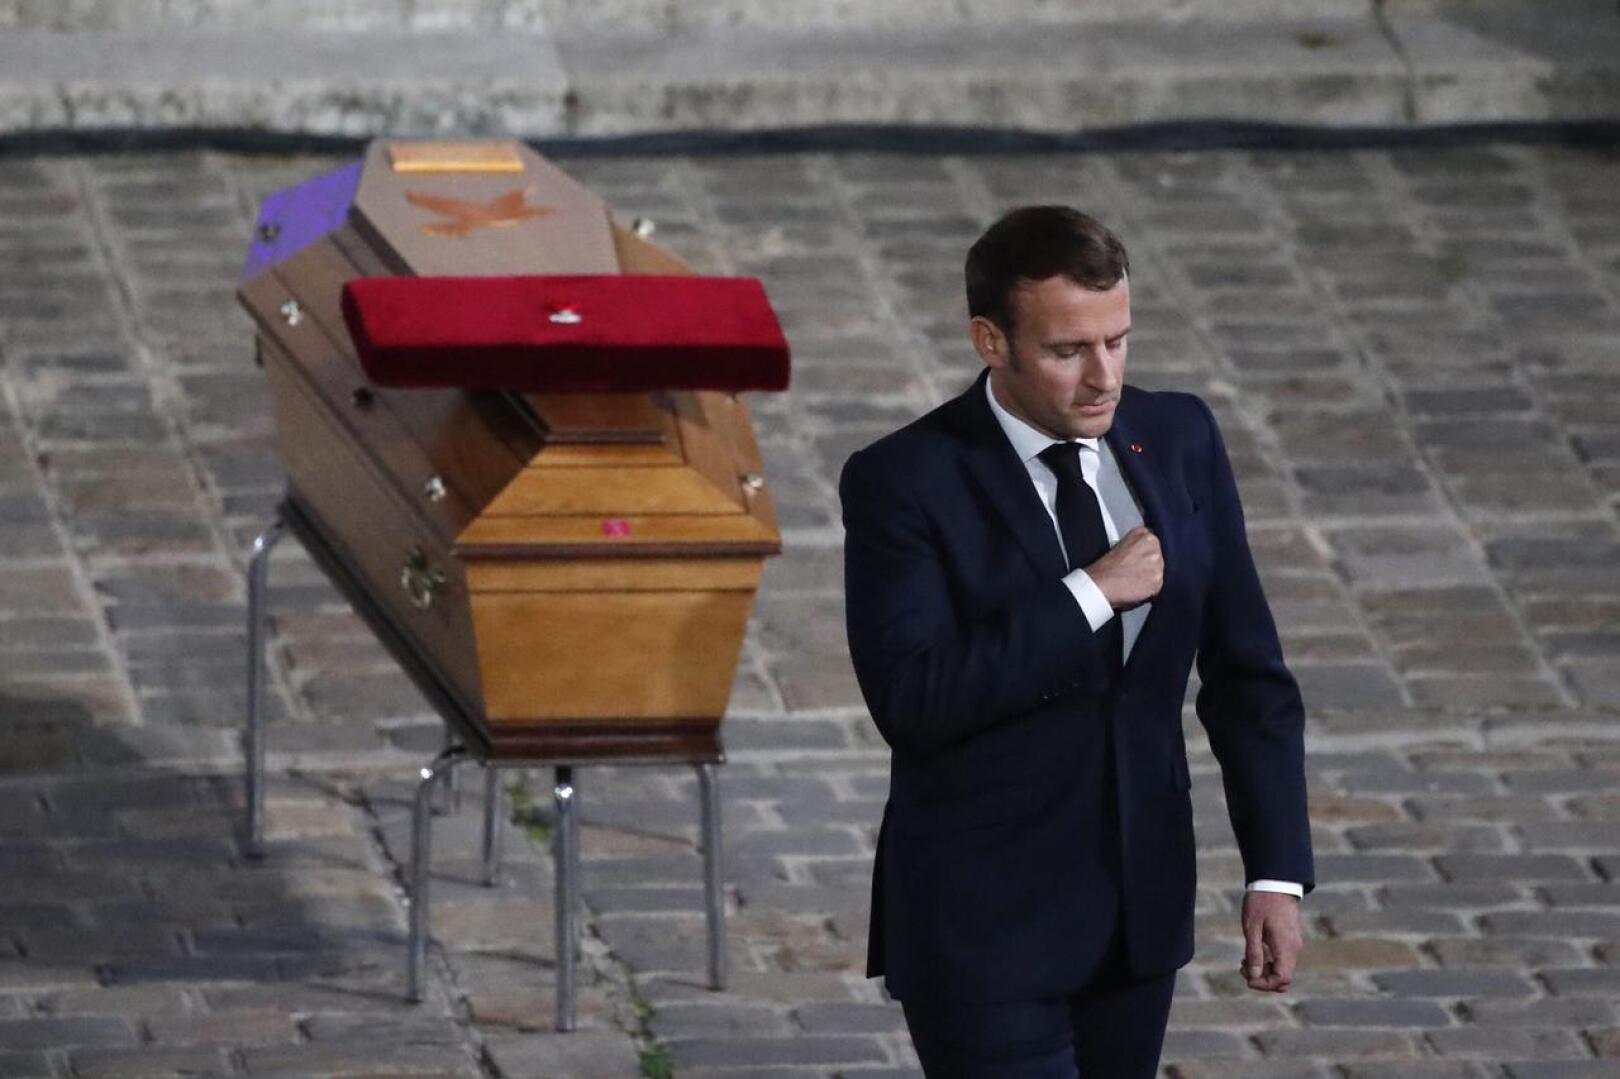 Ranskan presidentti Emmanuel Macron näytti silminnähden herkistyneeltä, kun hän puhui veitsi-iskussa murhatun opettajan muistotilaisuudessa Sorbonnen yliopistossa Pariisissa.